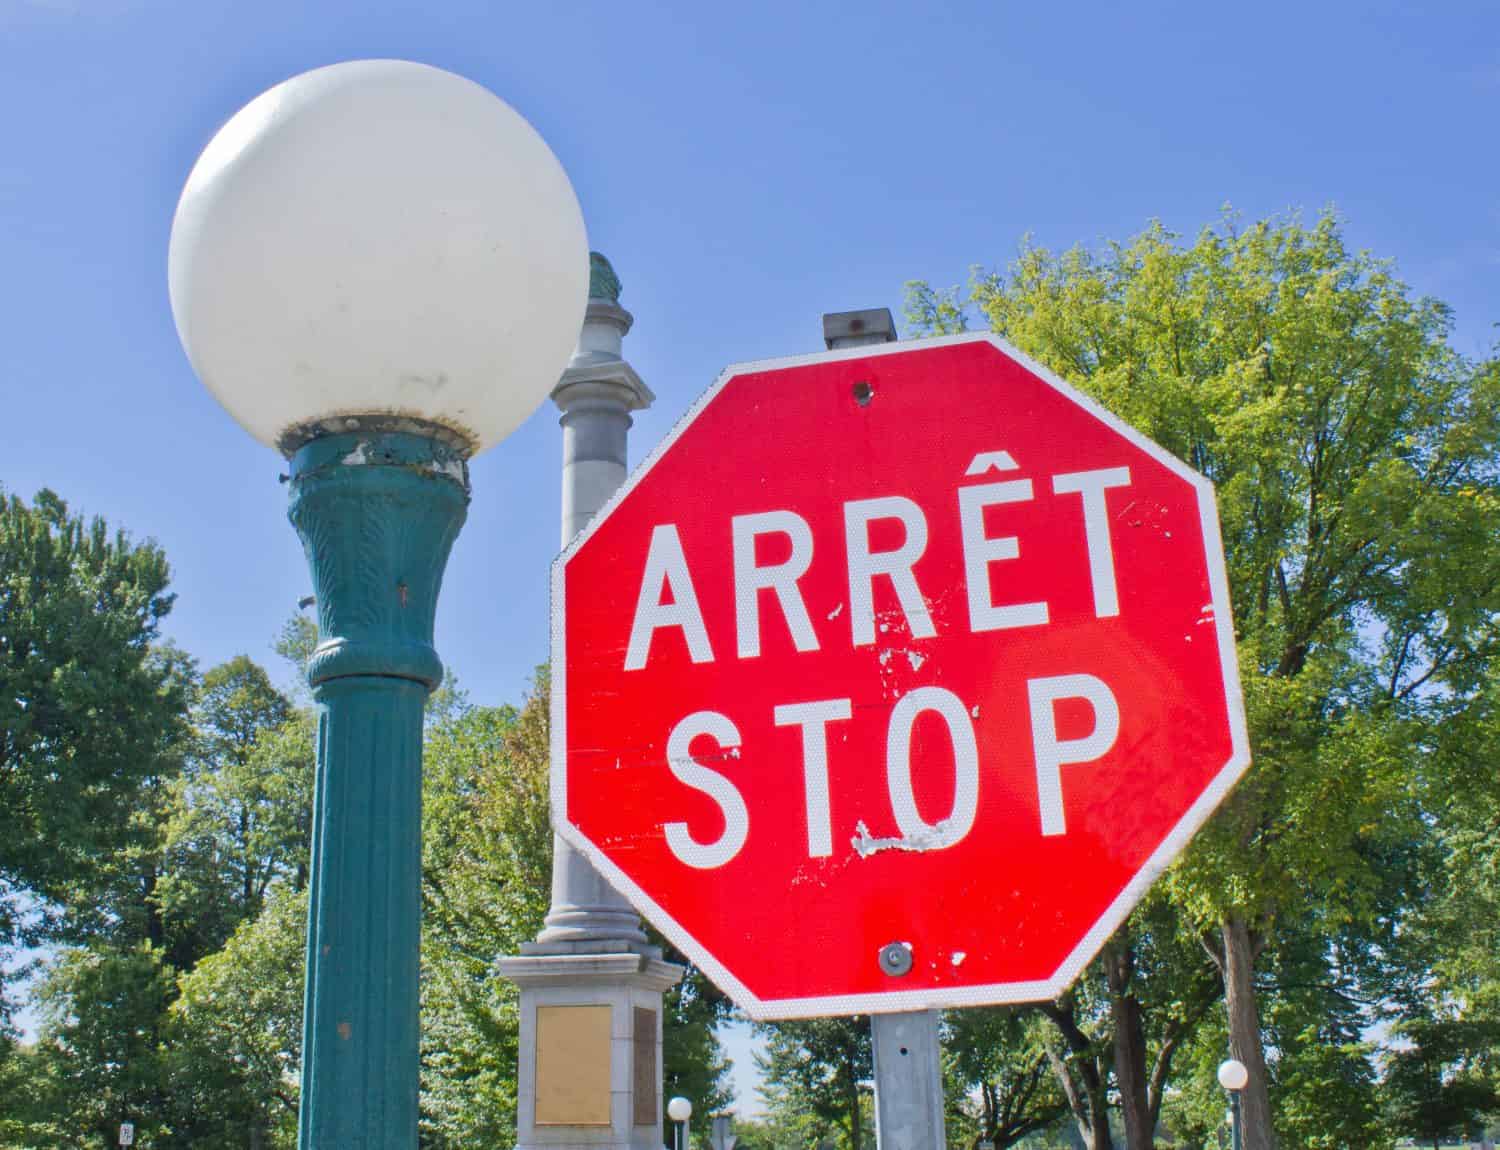 Un segnale di stop bilingue francese e inglese, rosso e bianco accanto a un classico lampione all'ingresso di un parco a Quebec City, Canada.